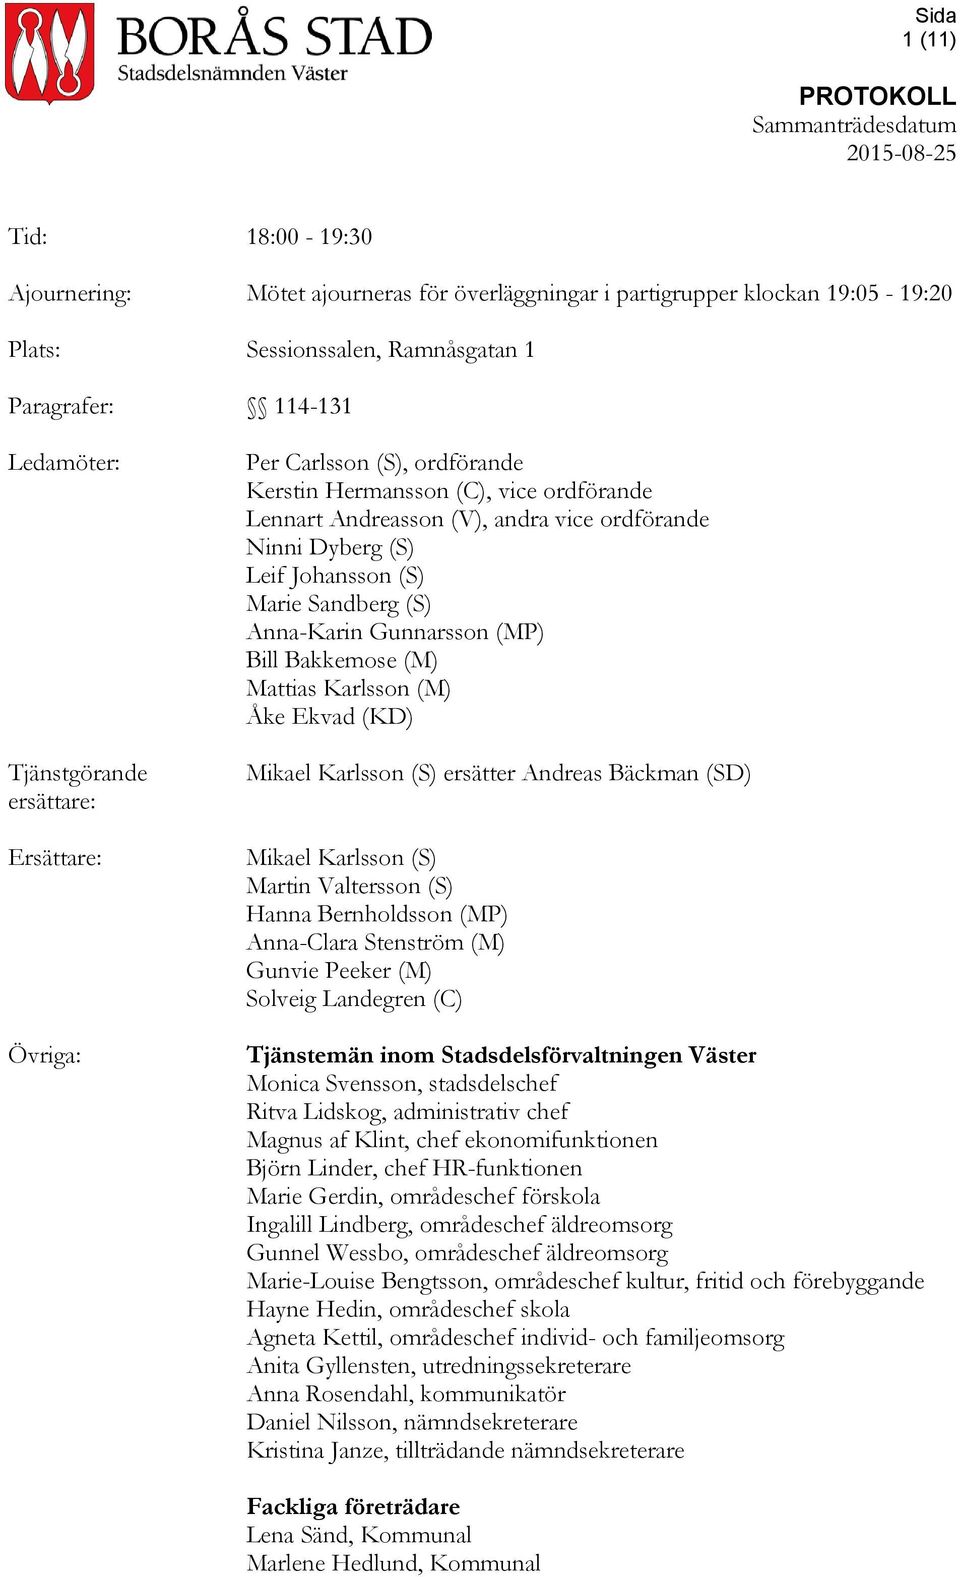 Gunnarsson (MP) Bill Bakkemose (M) Mattias Karlsson (M) Åke Ekvad (KD) Mikael Karlsson (S) ersätter Andreas Bäckman (SD) Mikael Karlsson (S) Martin Valtersson (S) Hanna Bernholdsson (MP) Anna-Clara